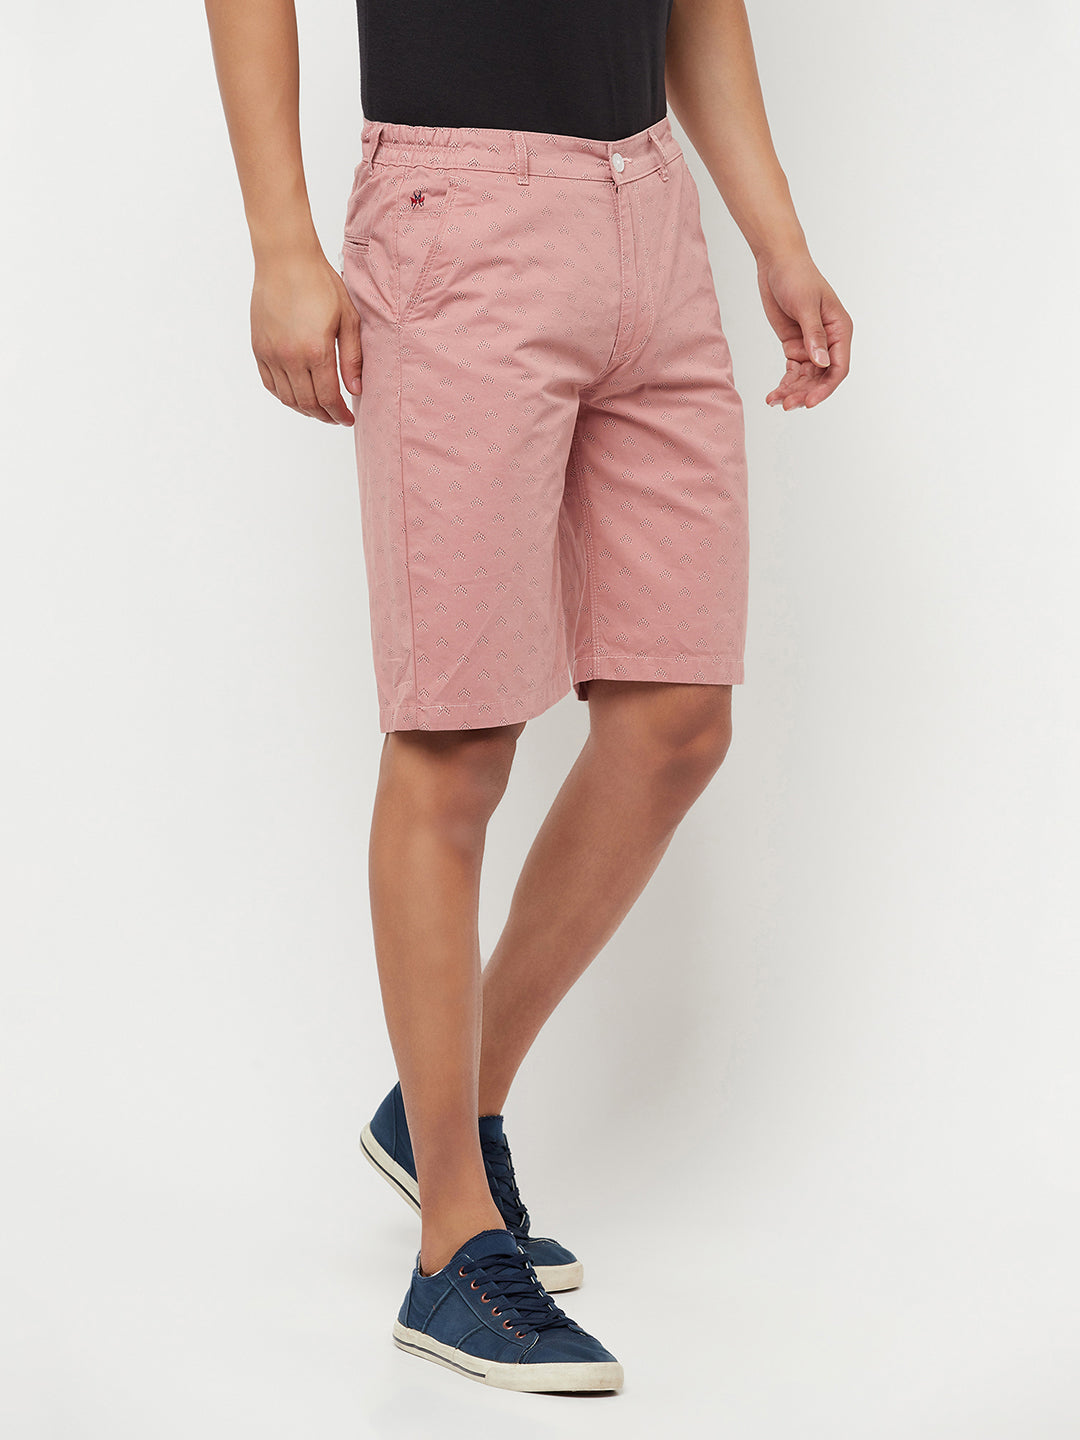 Pink Printed Shorts - Men Shorts